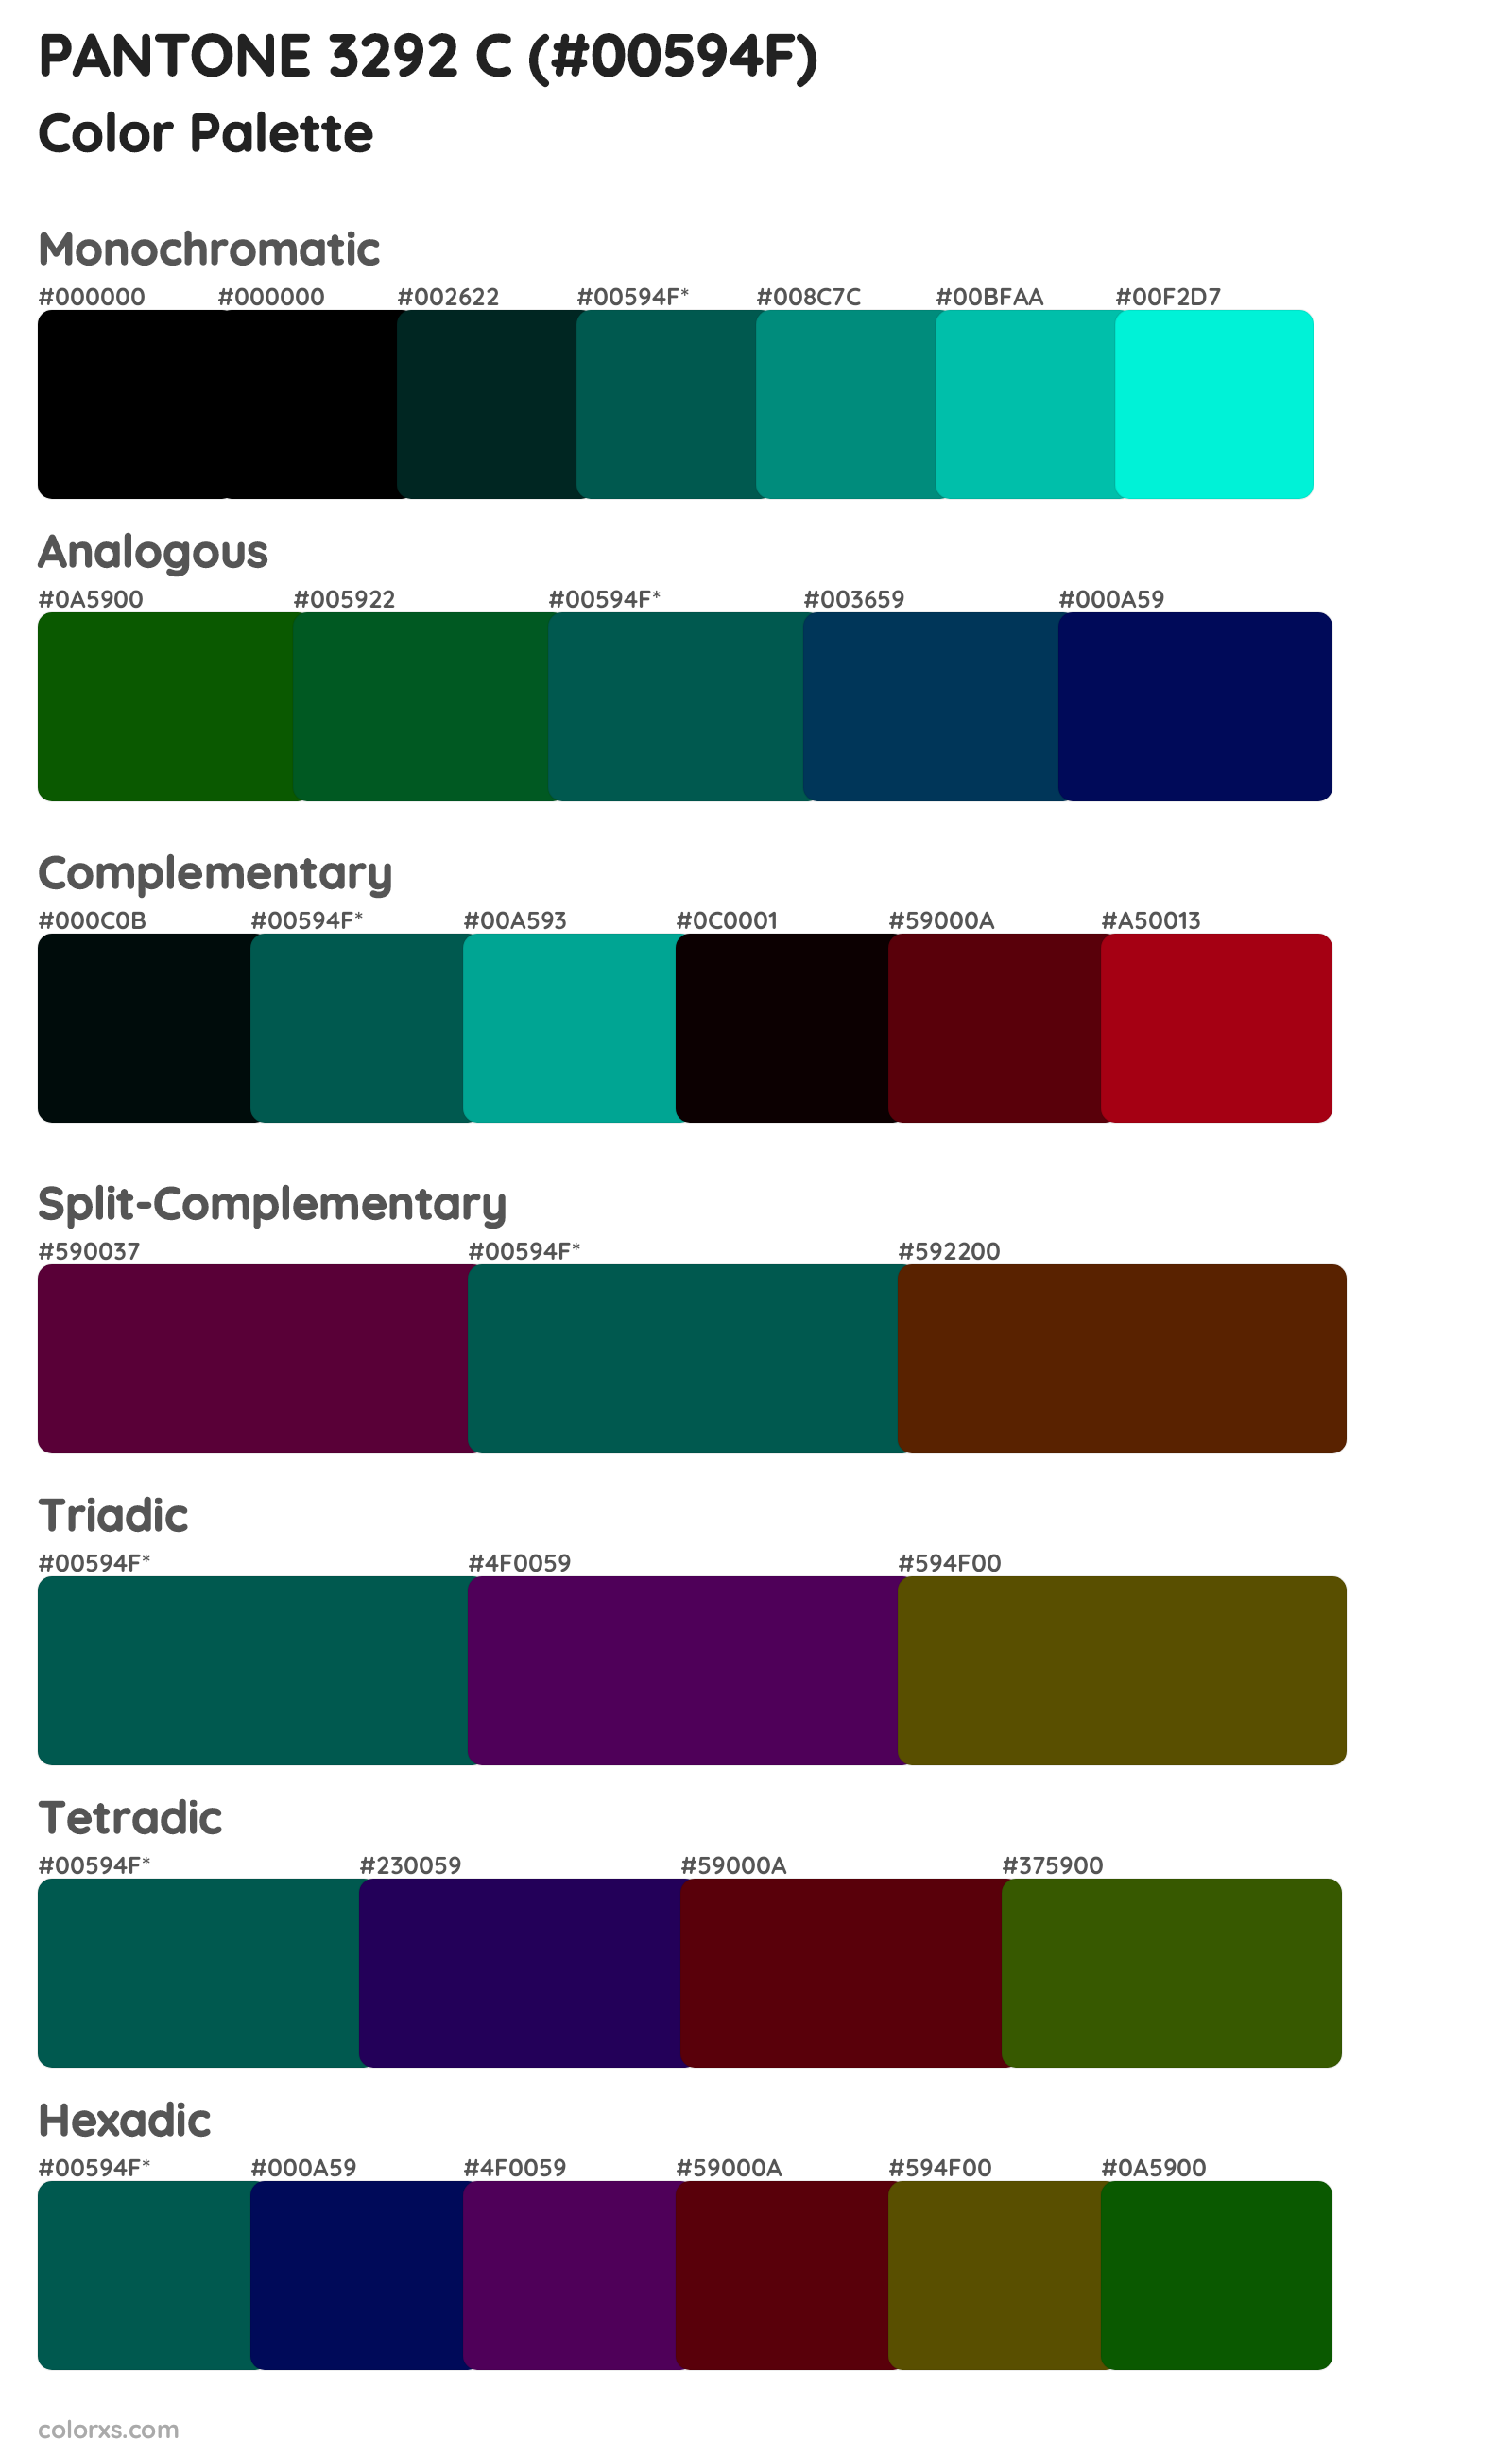 PANTONE 3292 C Color Scheme Palettes